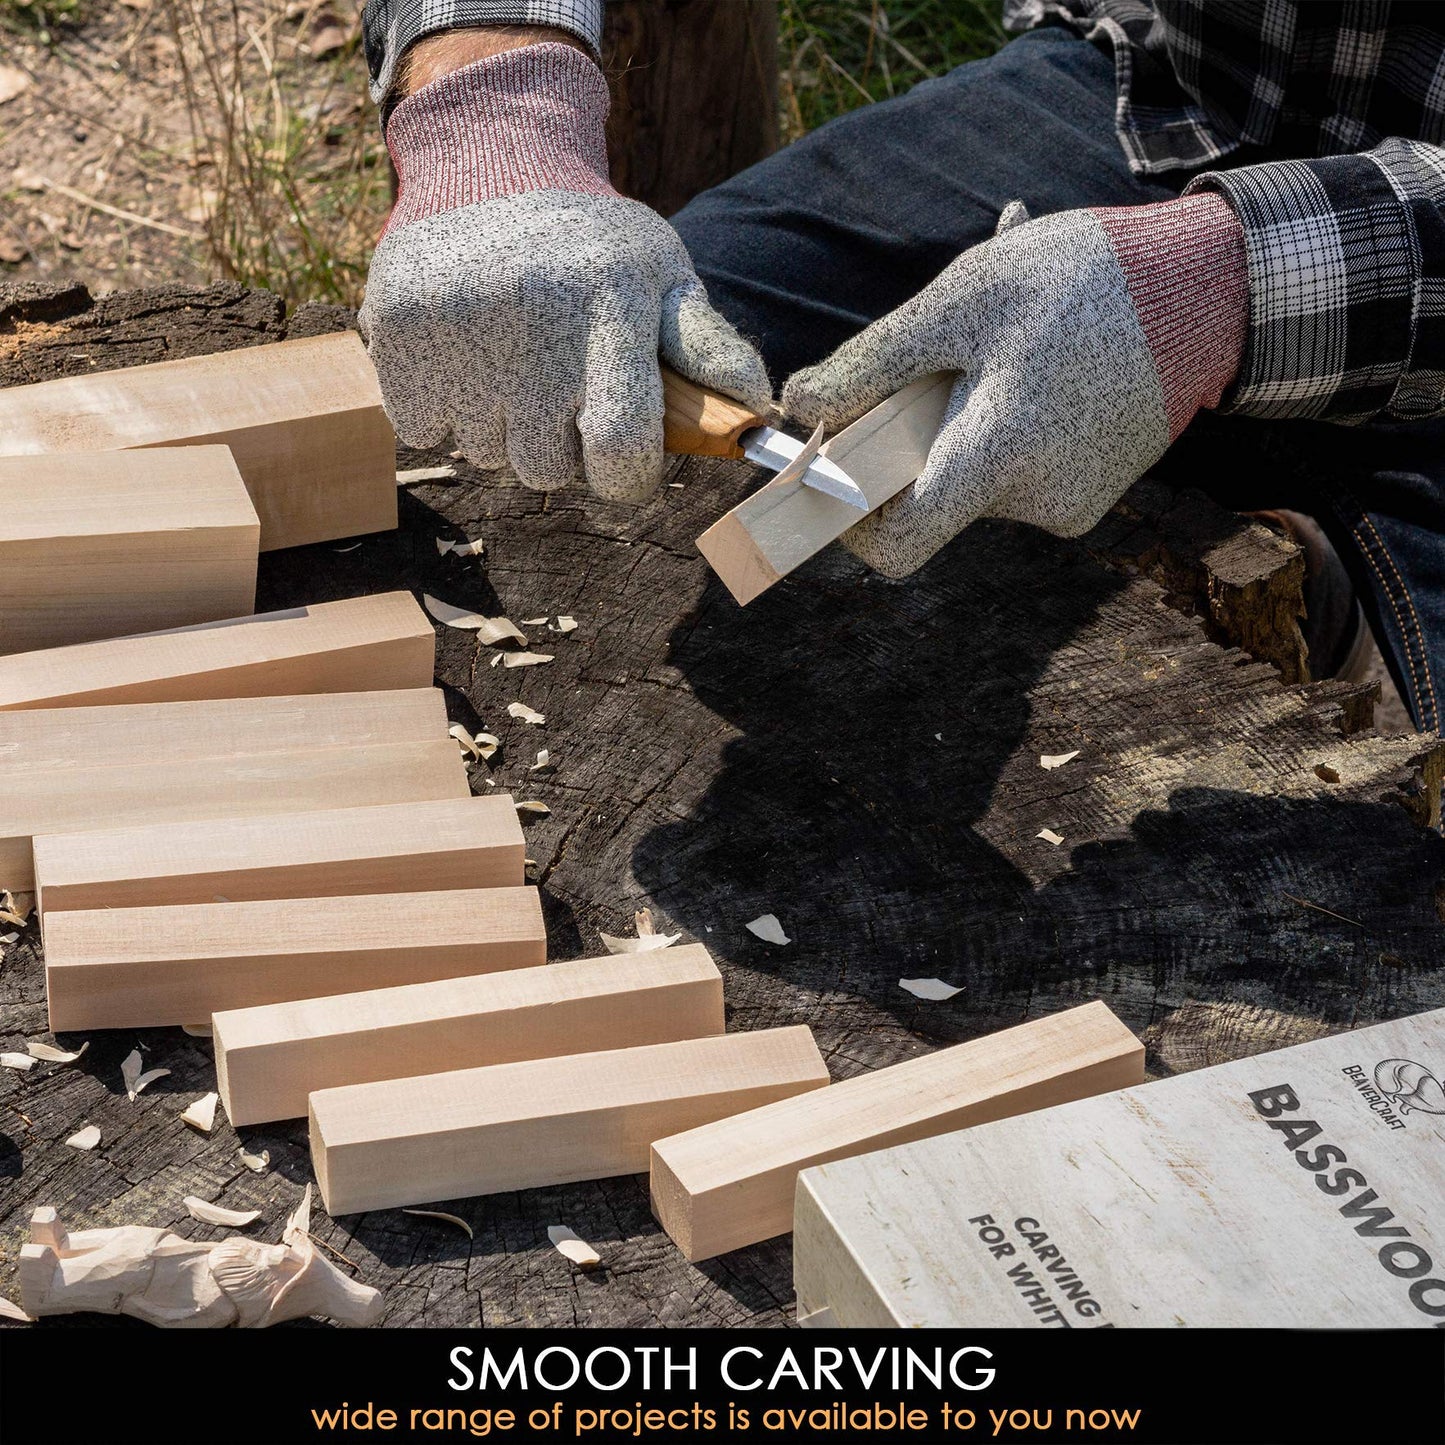 BeaverCraft Whittling Wood Carving Kit S15 Basswood Carving Blocks Set BW10 Wood Carving Tools Set Balsa Wood Blocks